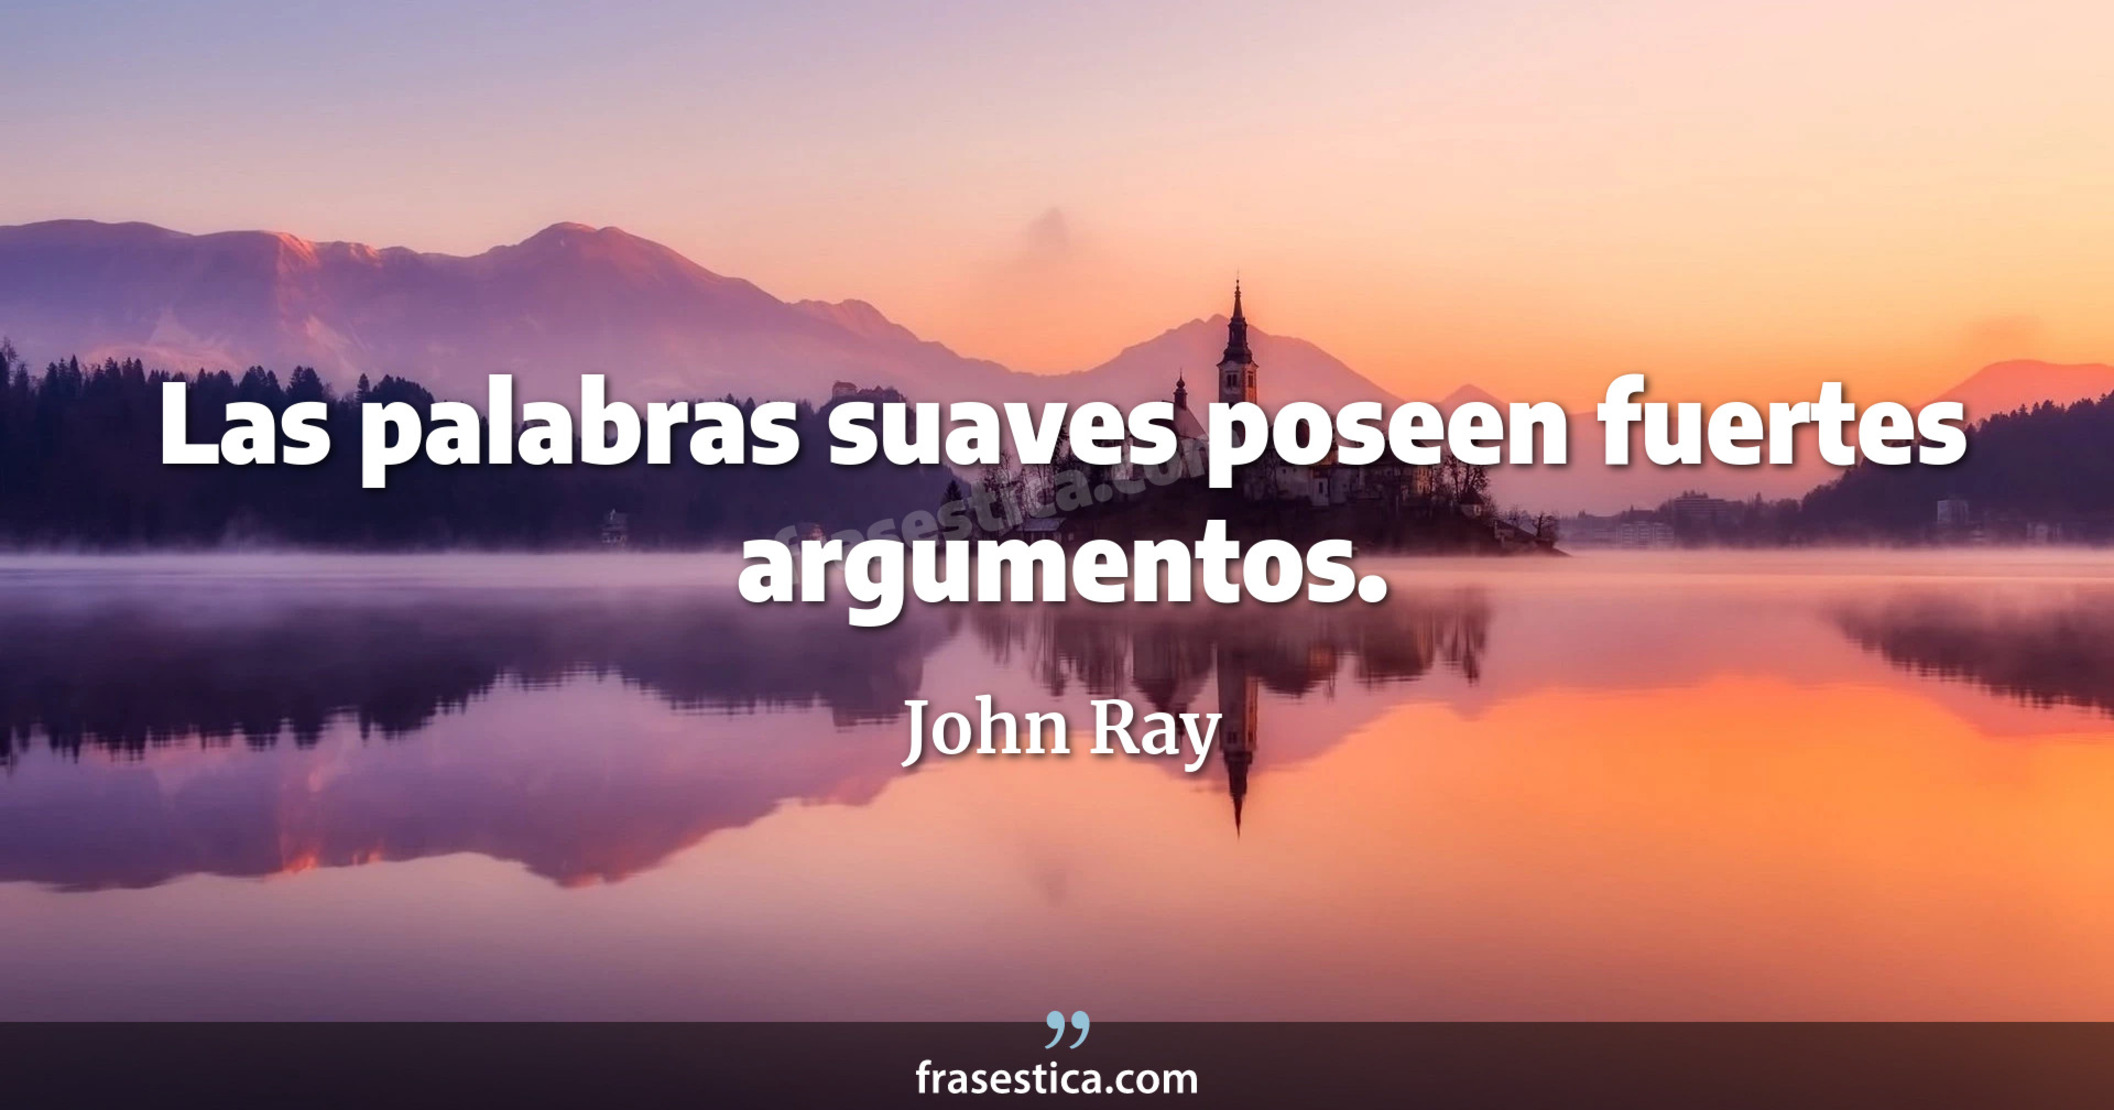 Las palabras suaves poseen fuertes argumentos.  - John Ray